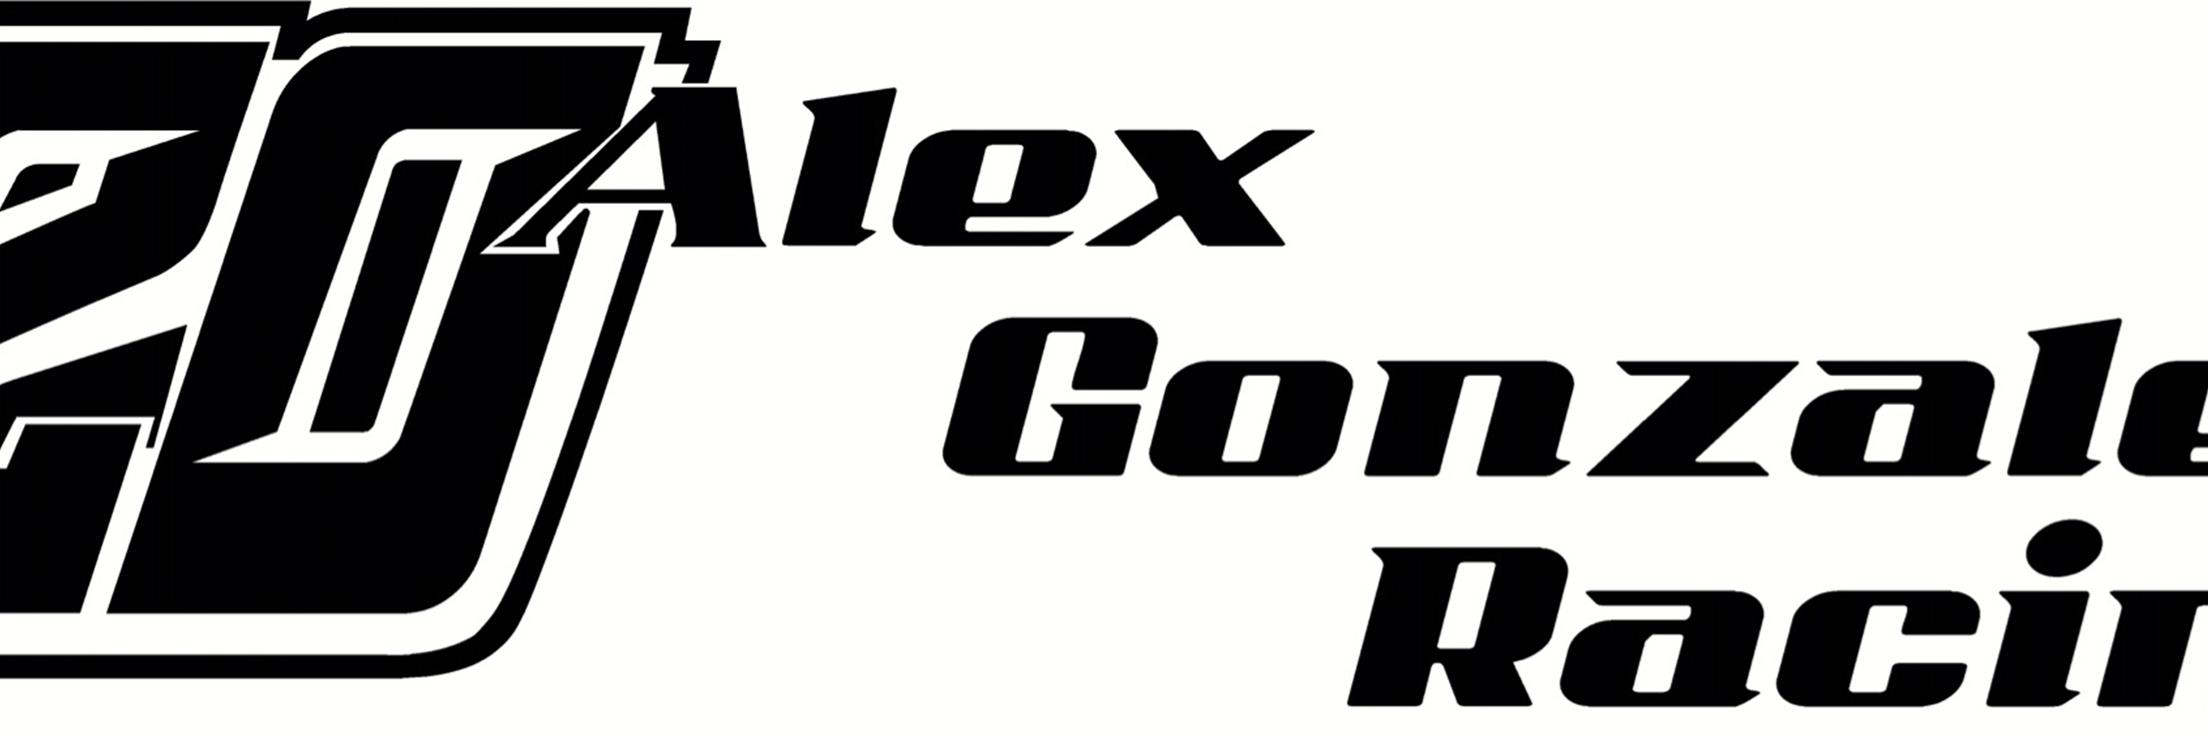 Alex Gonzalez